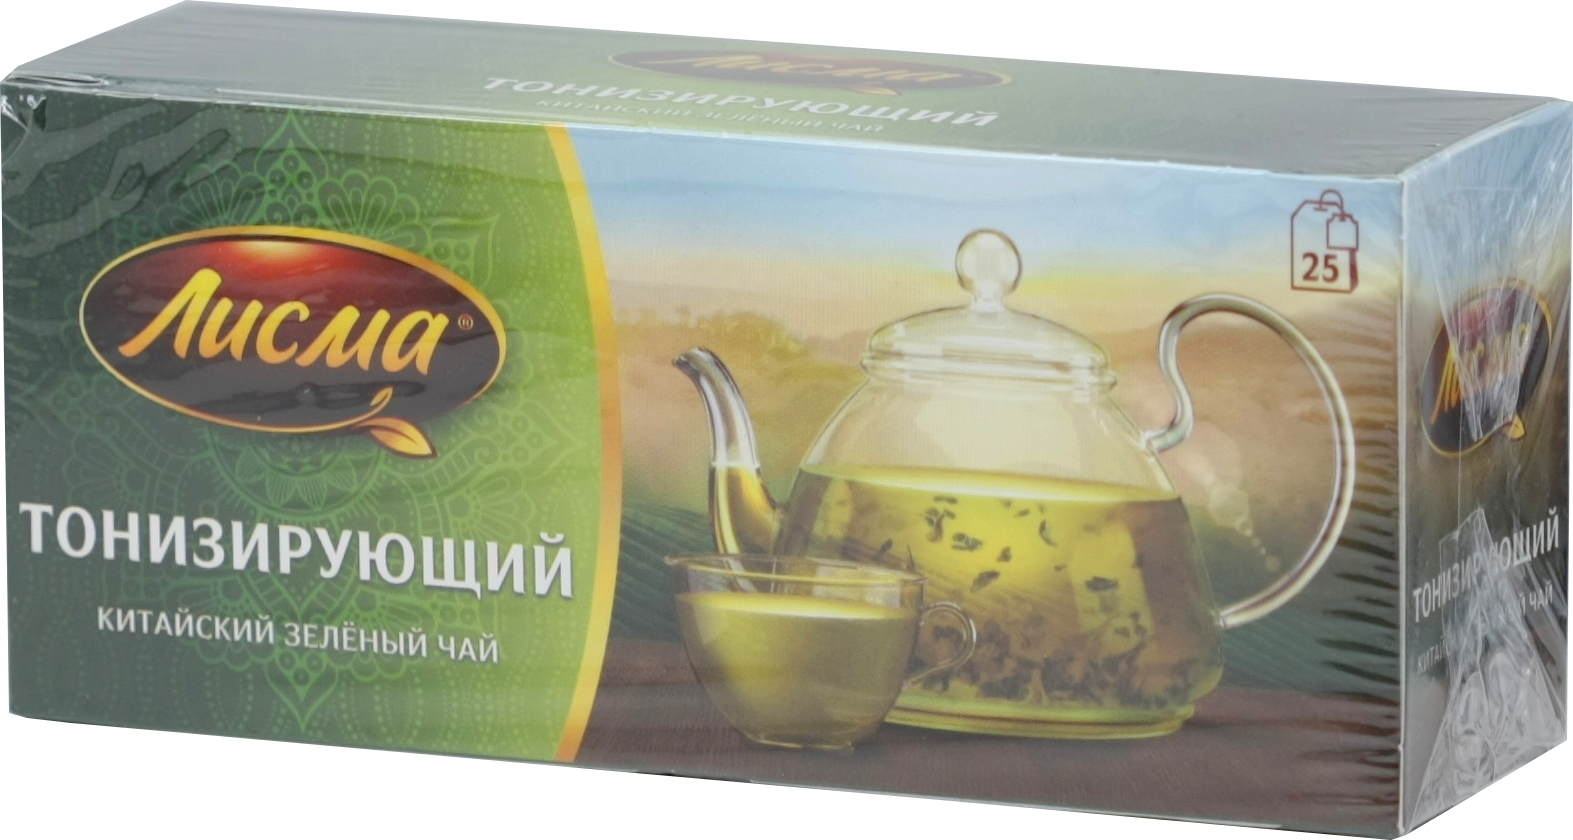 Чай "Лисма" тонизирующий китайский зеленый 25пак. "Майский чай". Чай Лисма тонизирующий 25 пак. Лисма тонизирующий китайский зеленый чай. Чай Лисма 25 пак зеленый. Тонизирующий 1*27шт 4620015850245.